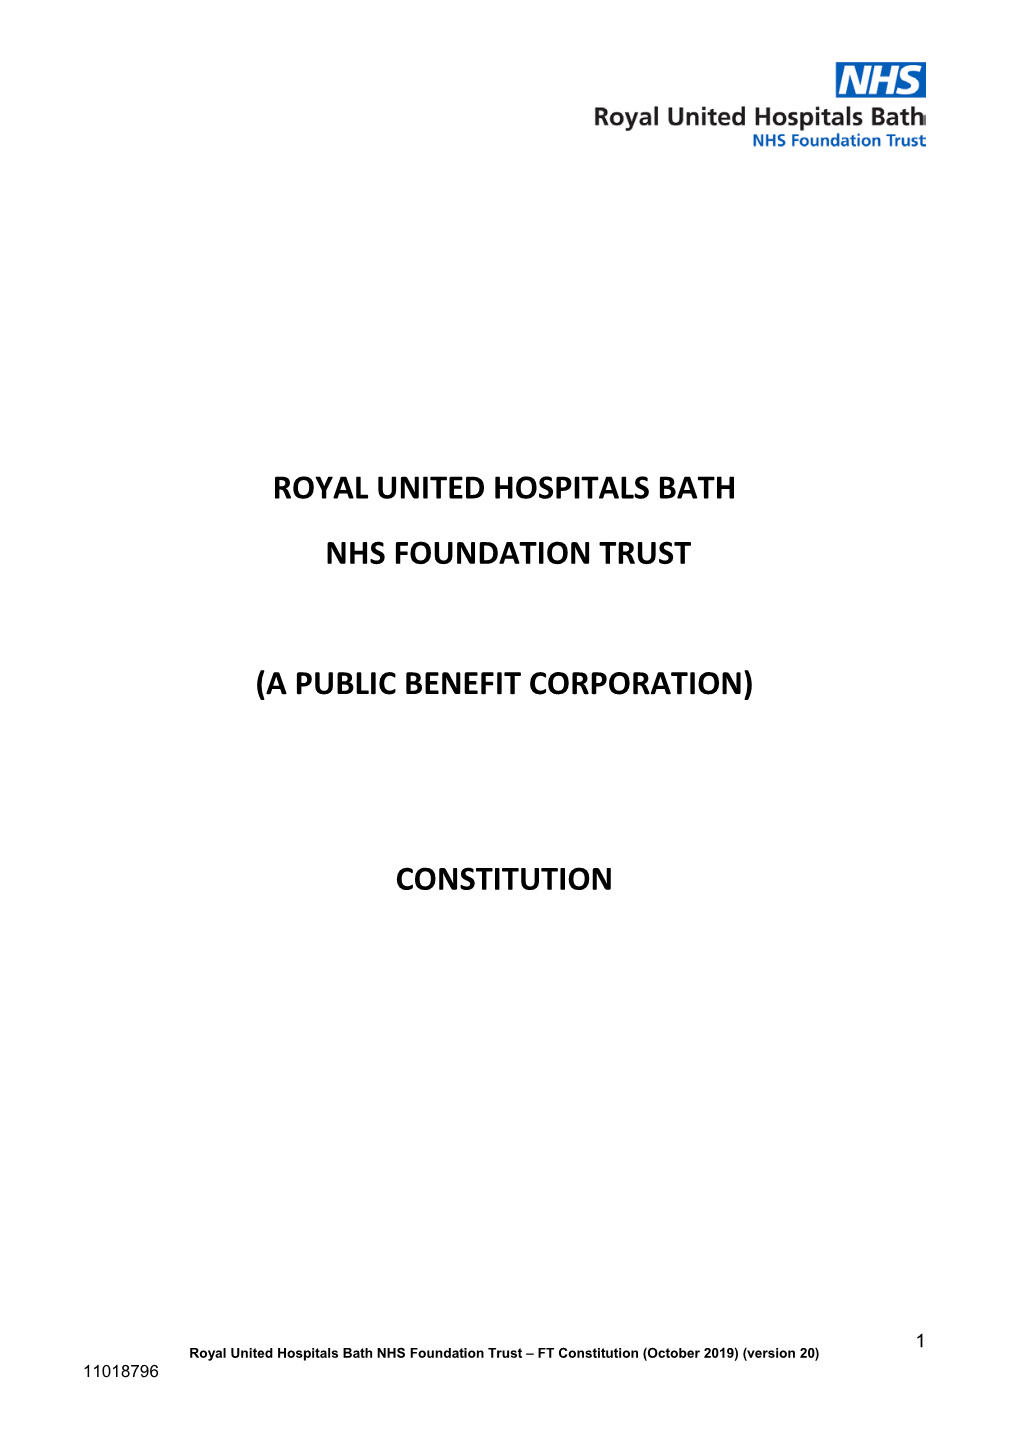 RUH Foundation Trust Constitution